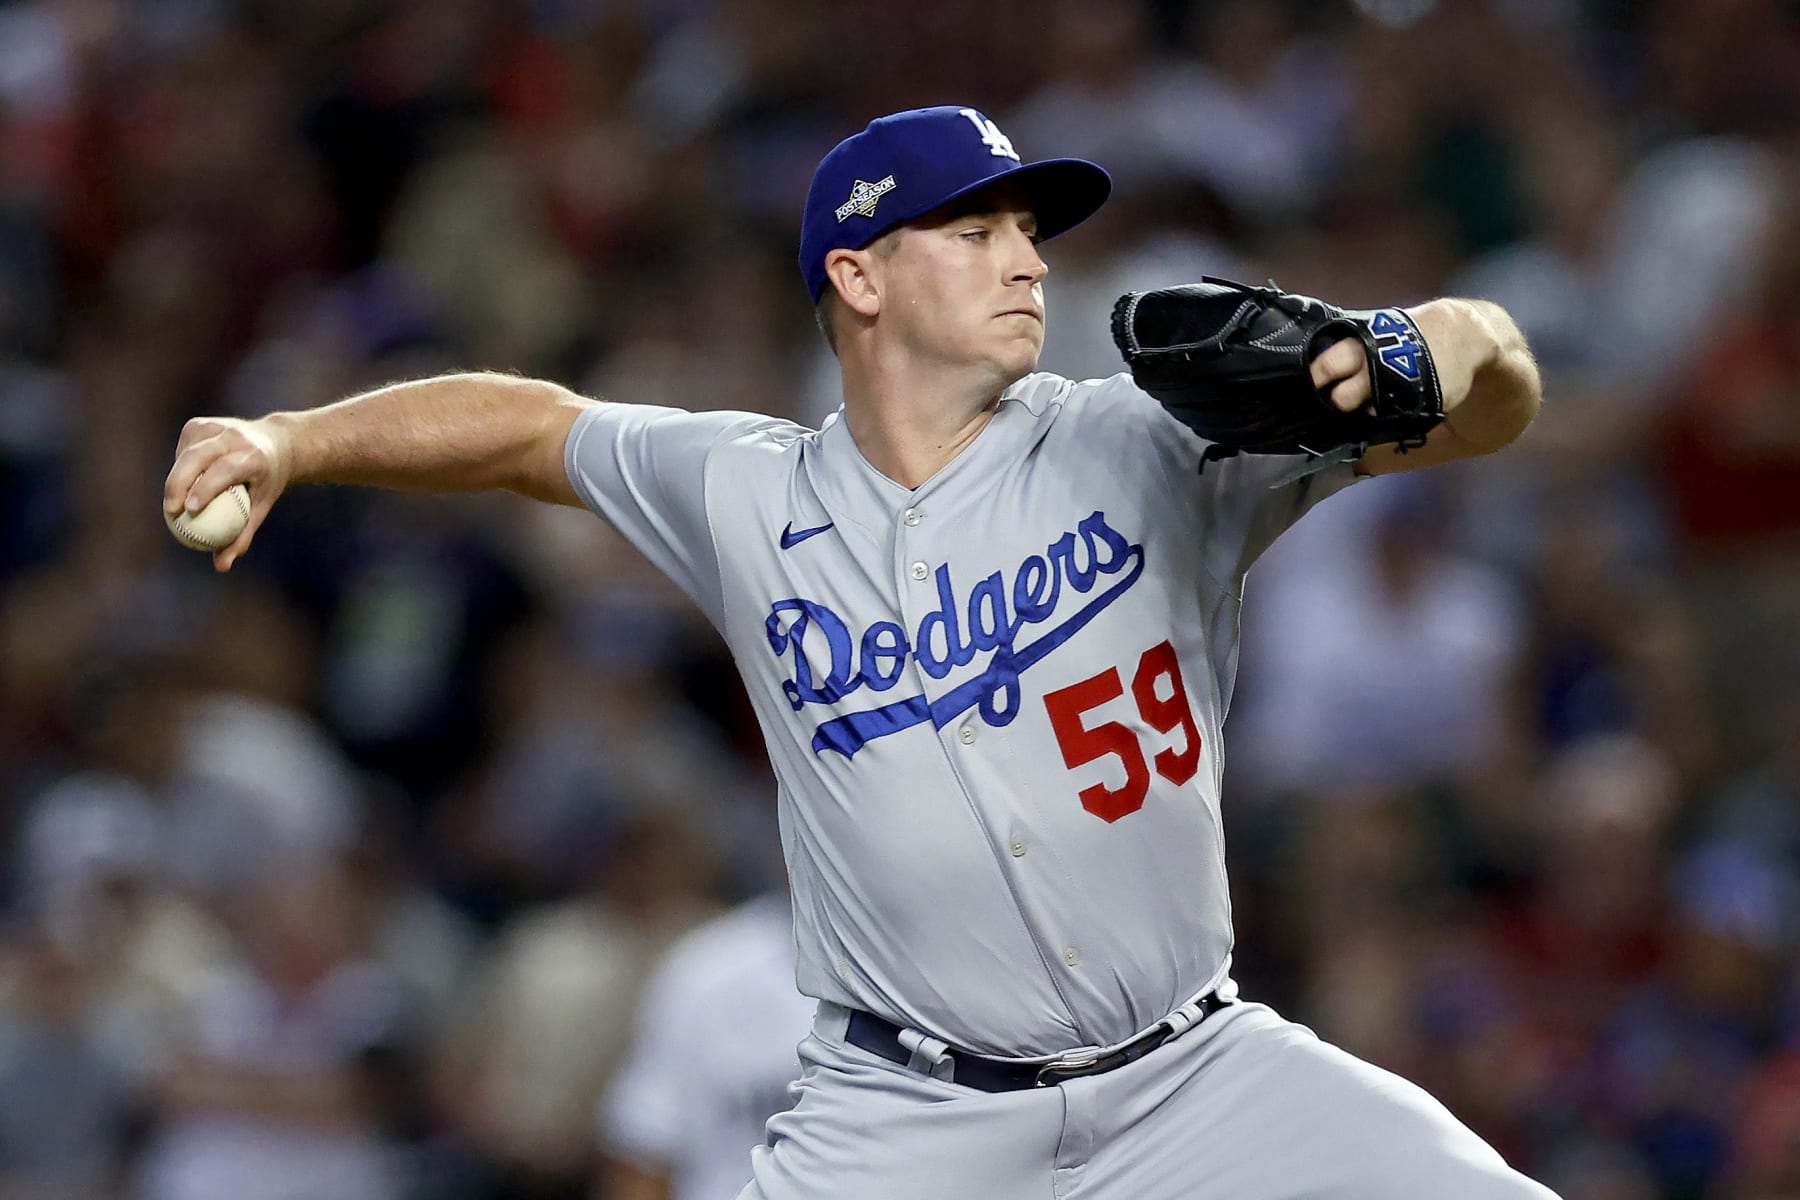 Evan Phillips’ Home Burglarized During Dodgers’ Playoff Run, Investigation Underway